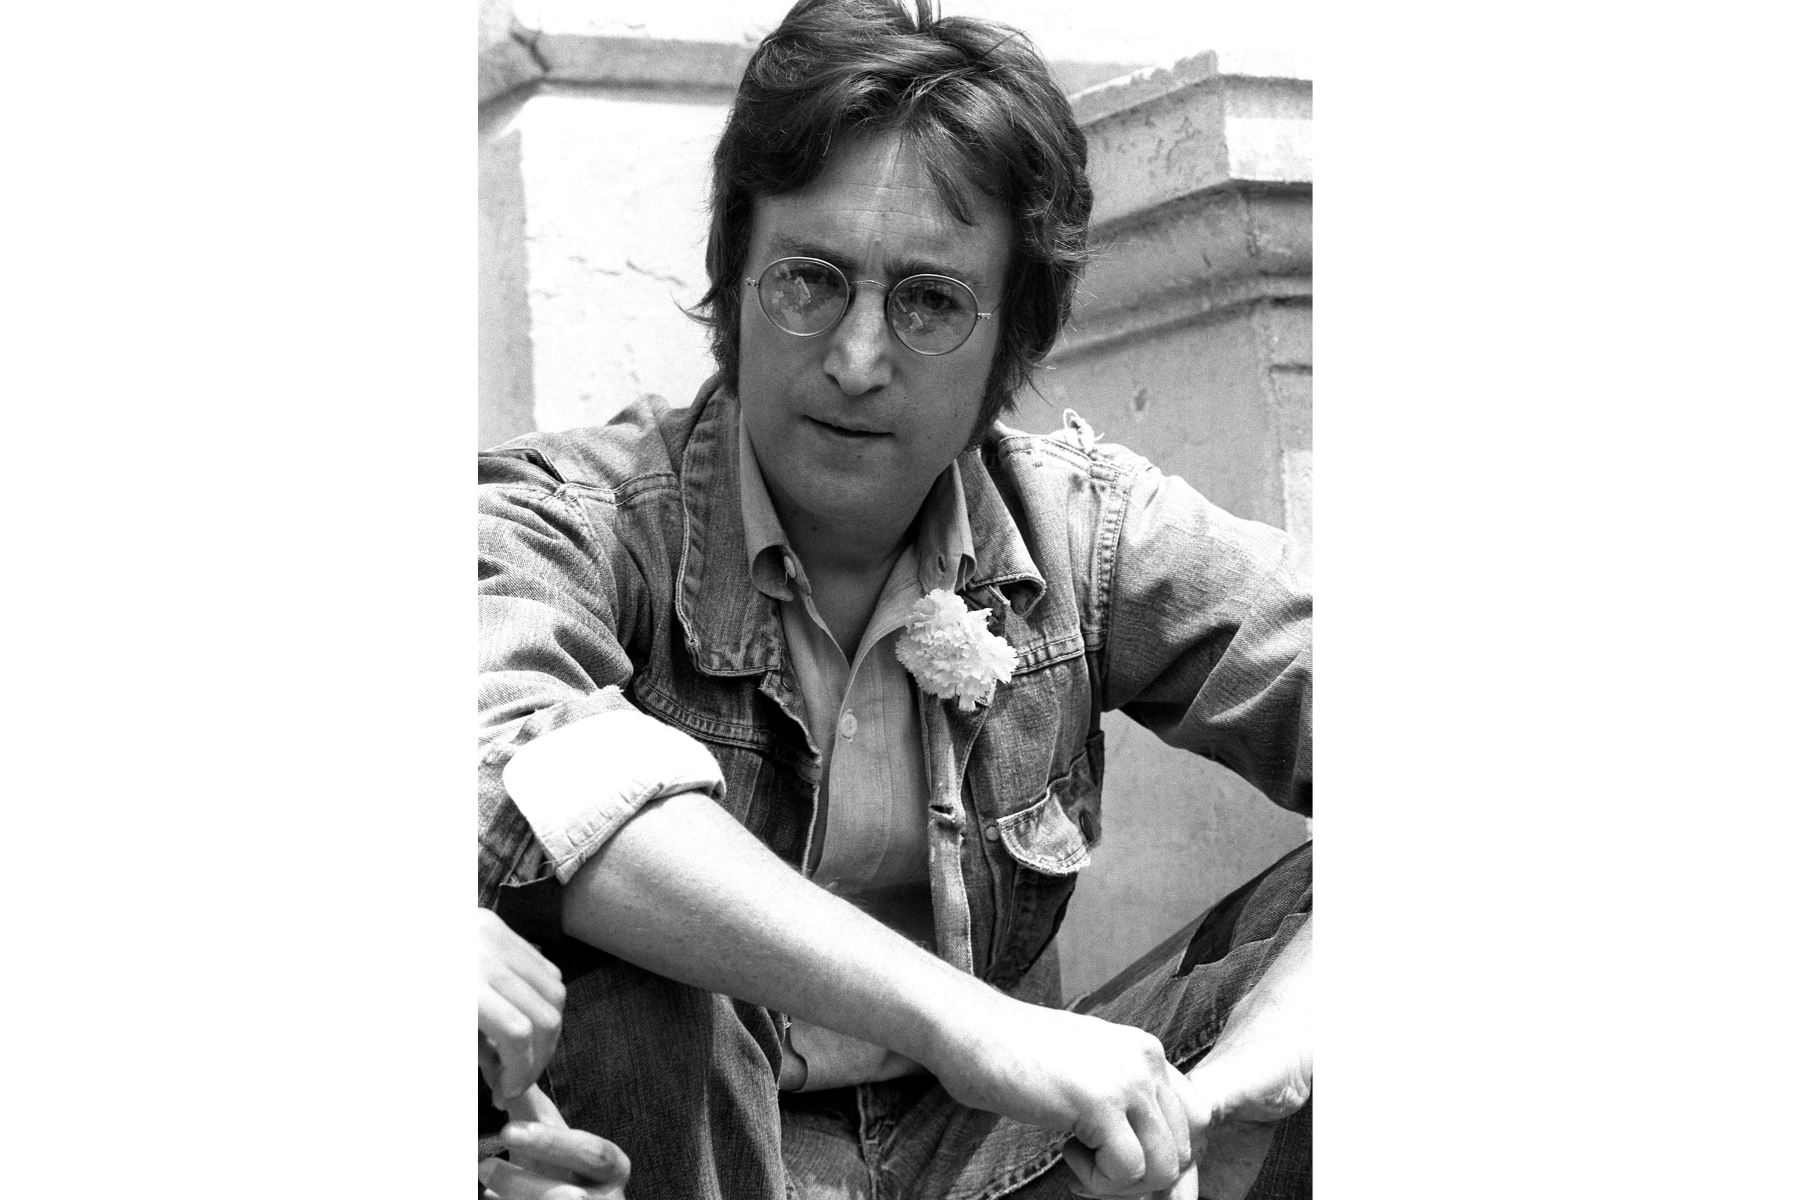 El célebre músico y cantante John Lennon posa para los fotógrafos el 17 de mayo de 1971 en Cannes o se presenta en ocasión del Festival de Cine. 
AFP